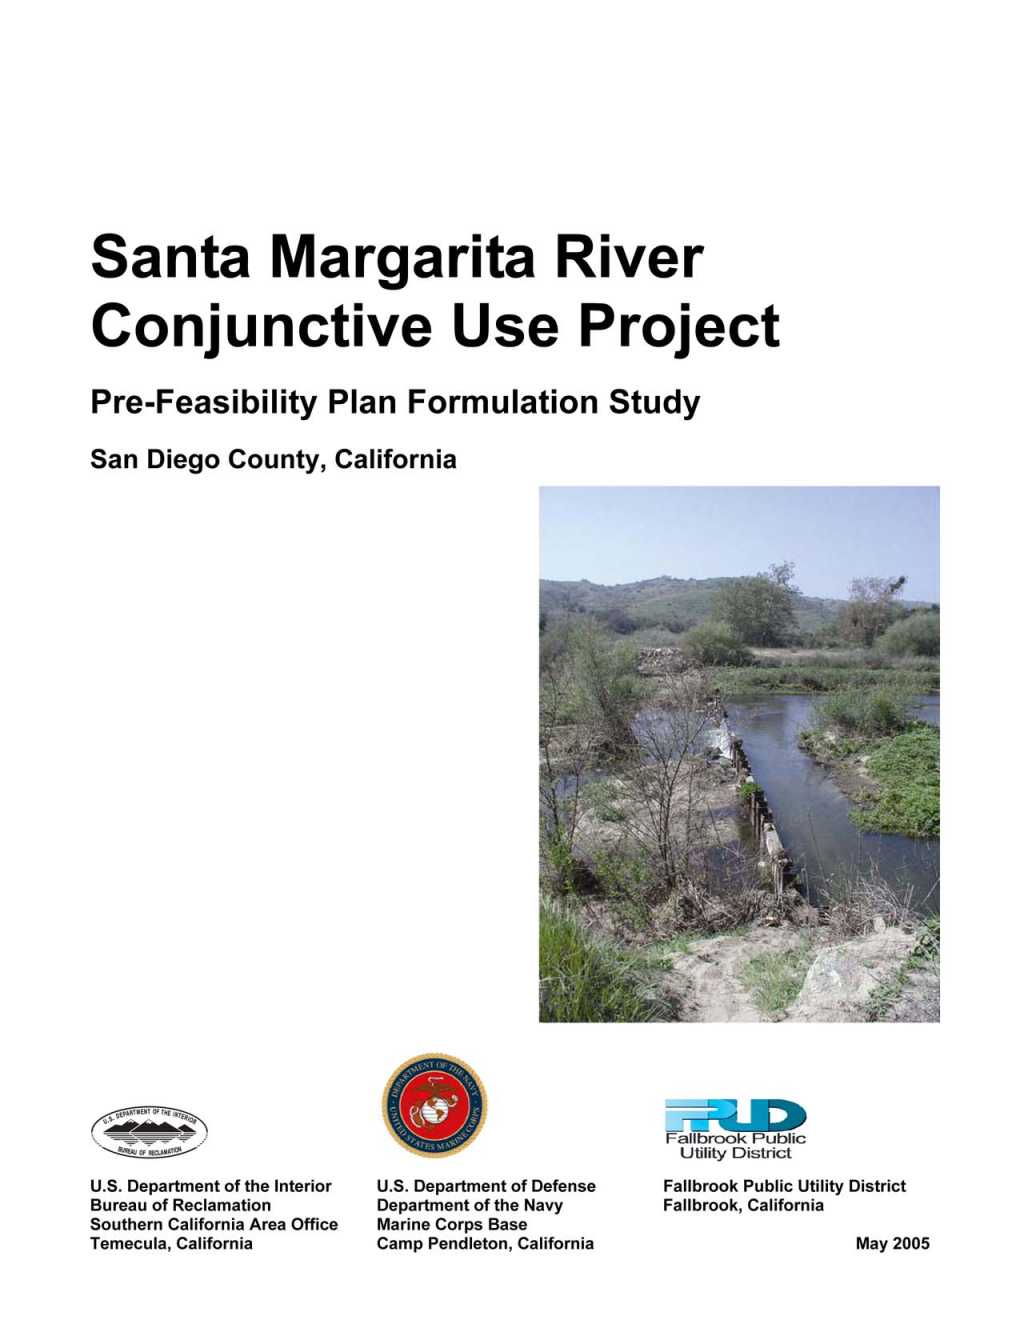 Santa Margarita River Conjunctive Use